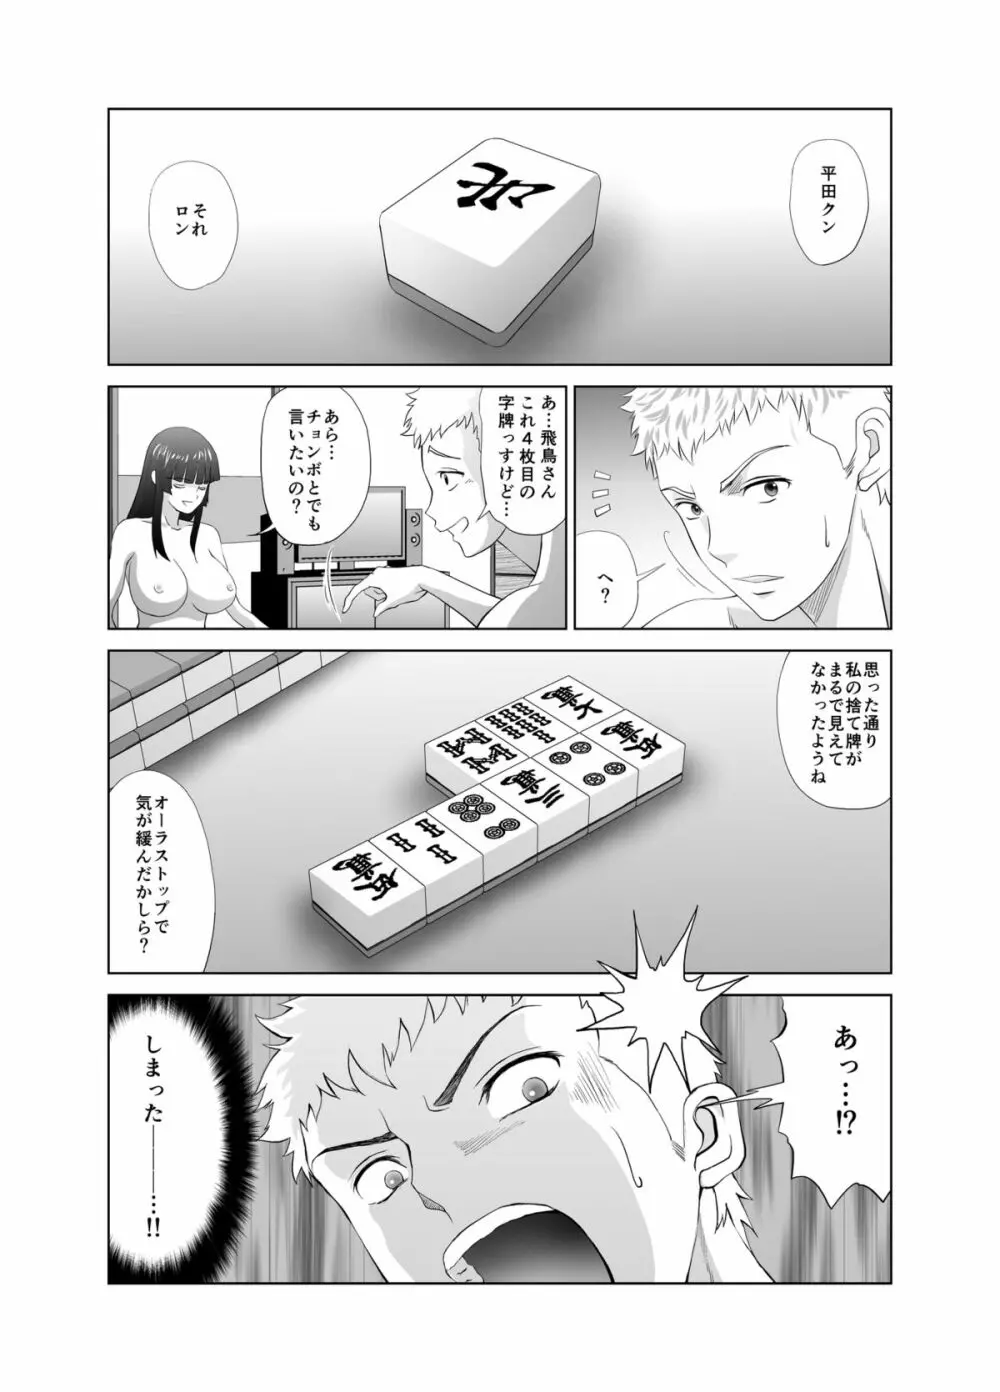 脱衣麻雀～漫画編～【完成版】 27ページ